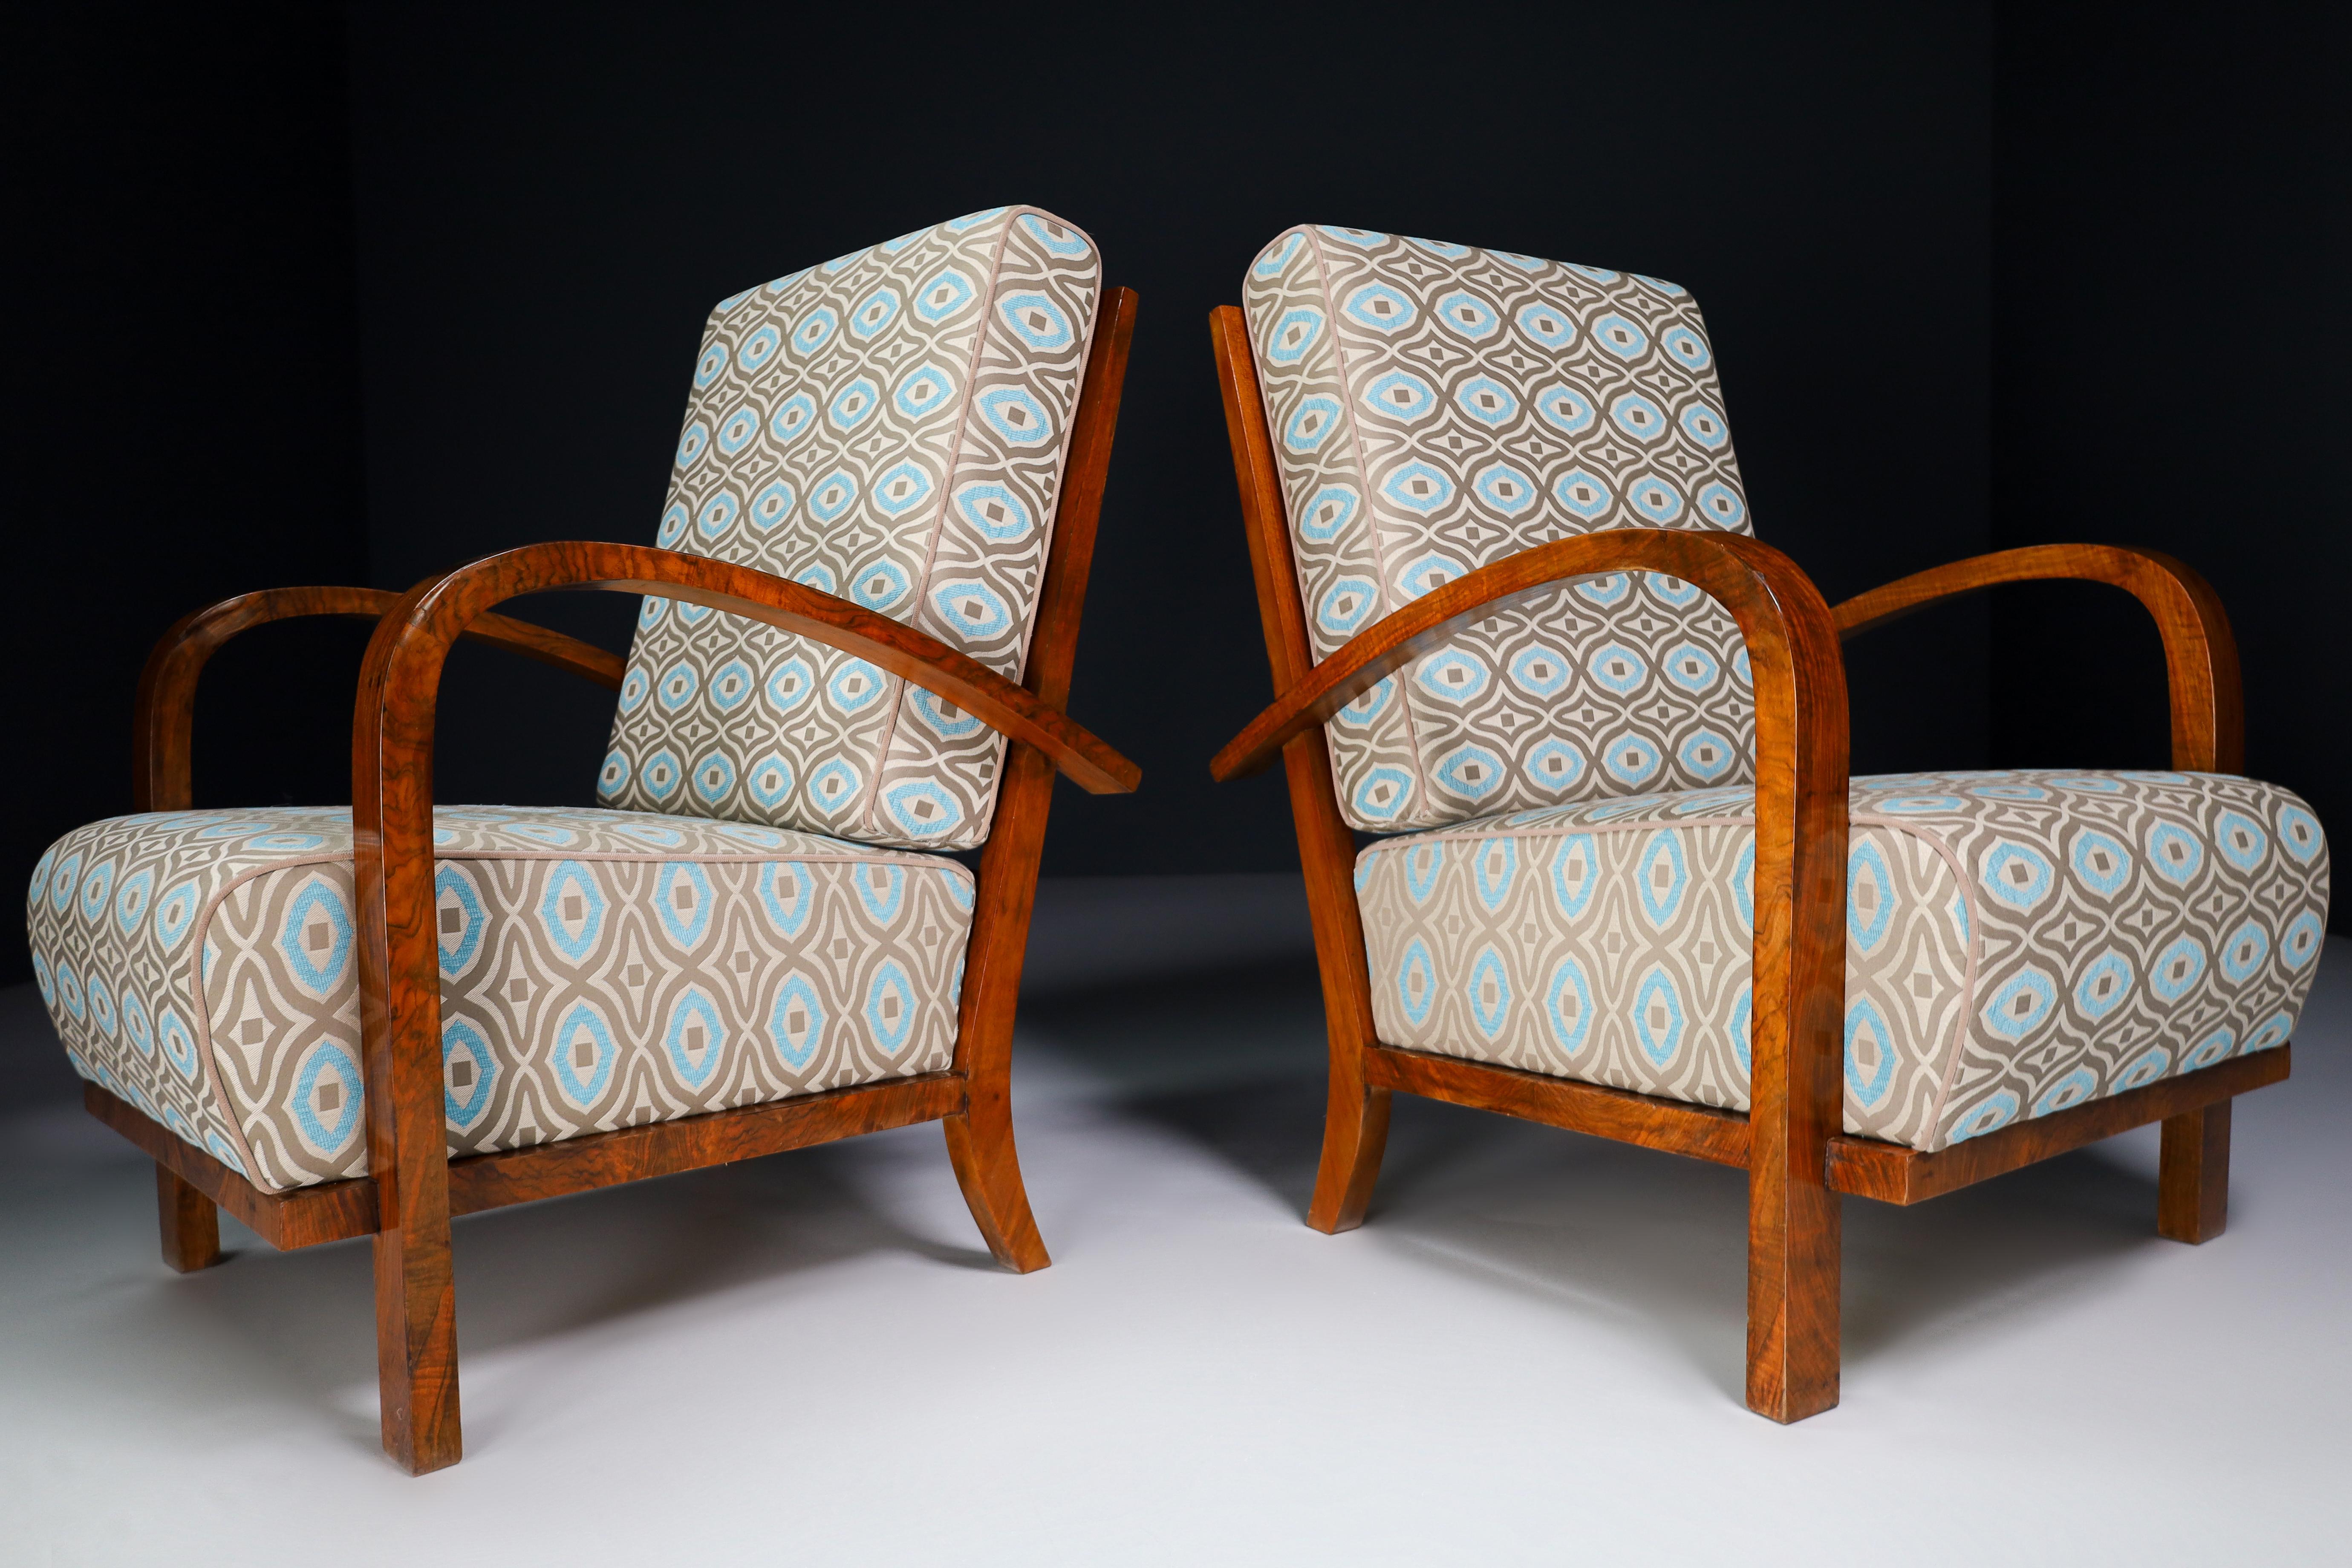 Zwei Art-Deco-Lounge-/Sessel, Nussbaumholz, Bugholz und neu gepolsterter Stoff, Praque 1930er Jahre, Paar. Diese Sessel sind eine auffällige Ergänzung für jede Einrichtung, z. B. im Wohnzimmer, im Familienzimmer, im Screening-Raum oder sogar im